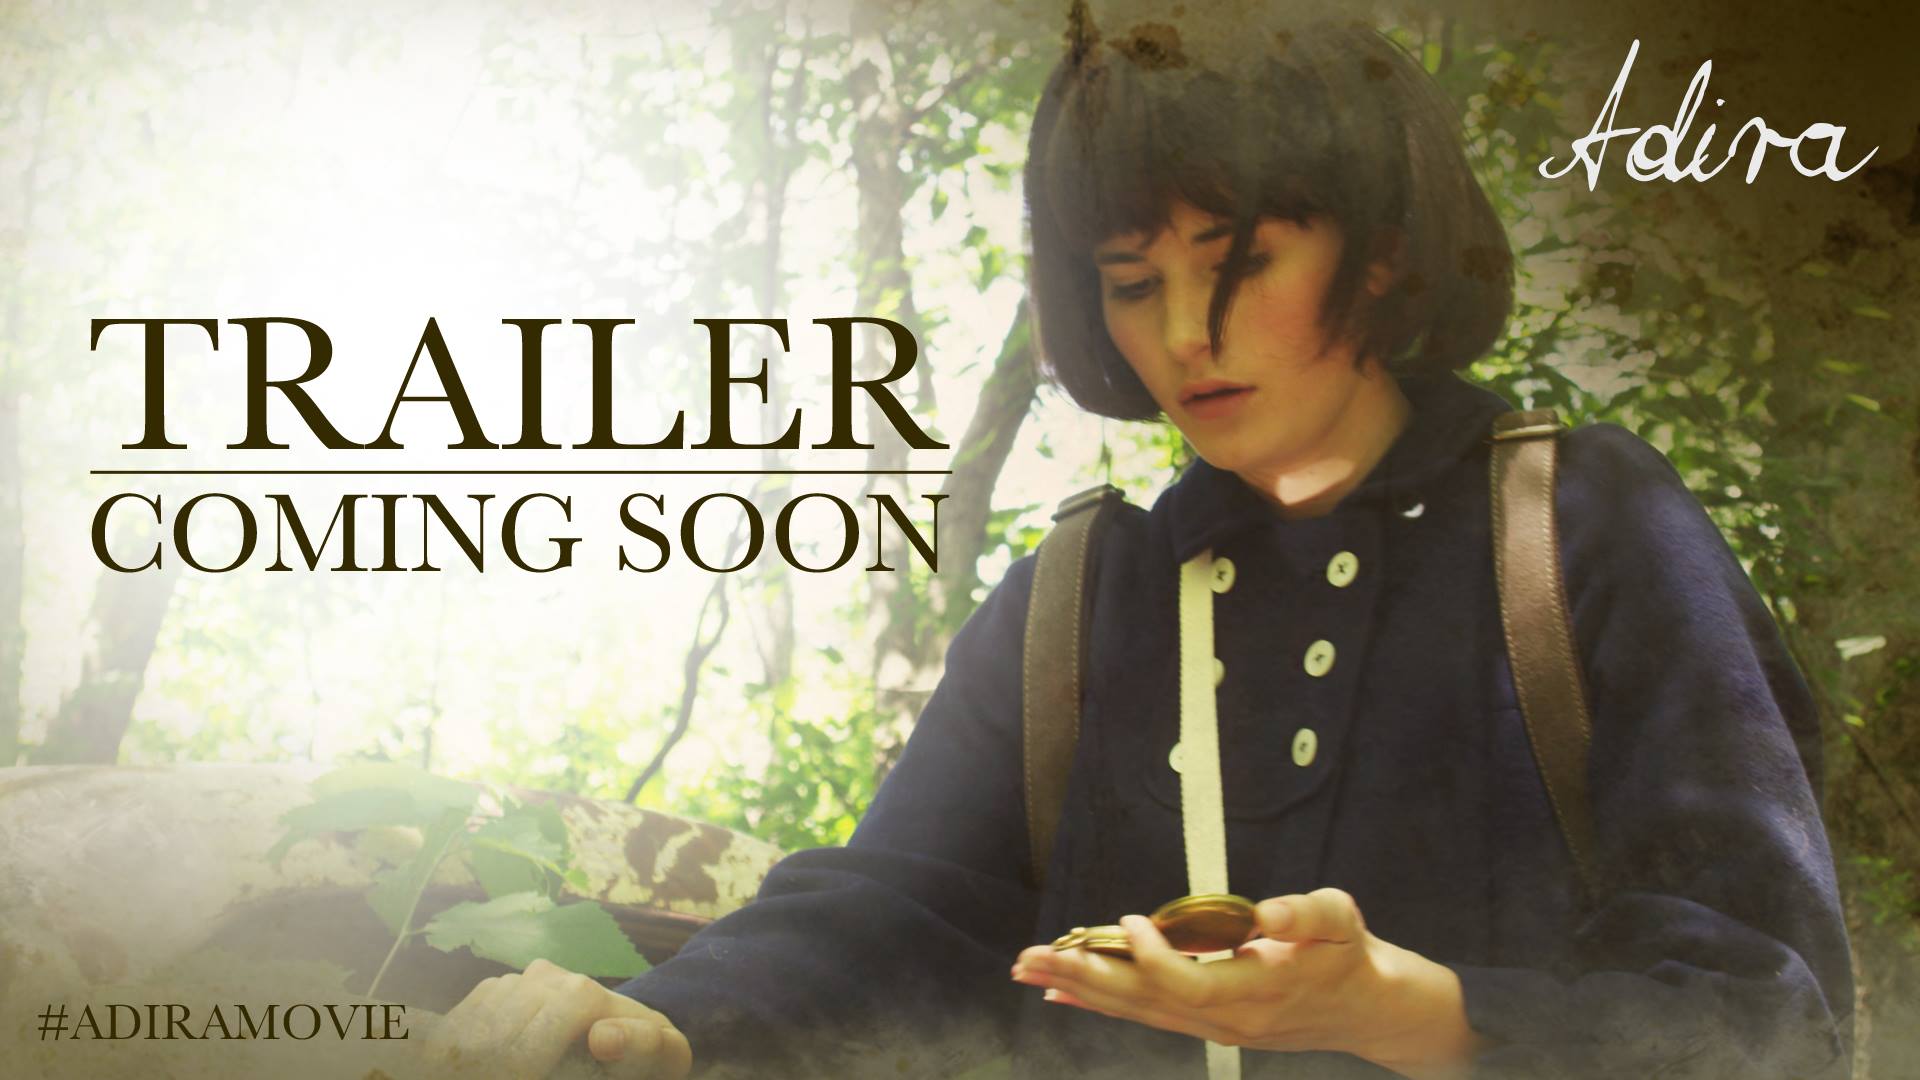 The announcement of Adira's new trailer starring Andrea Fantauzzi.